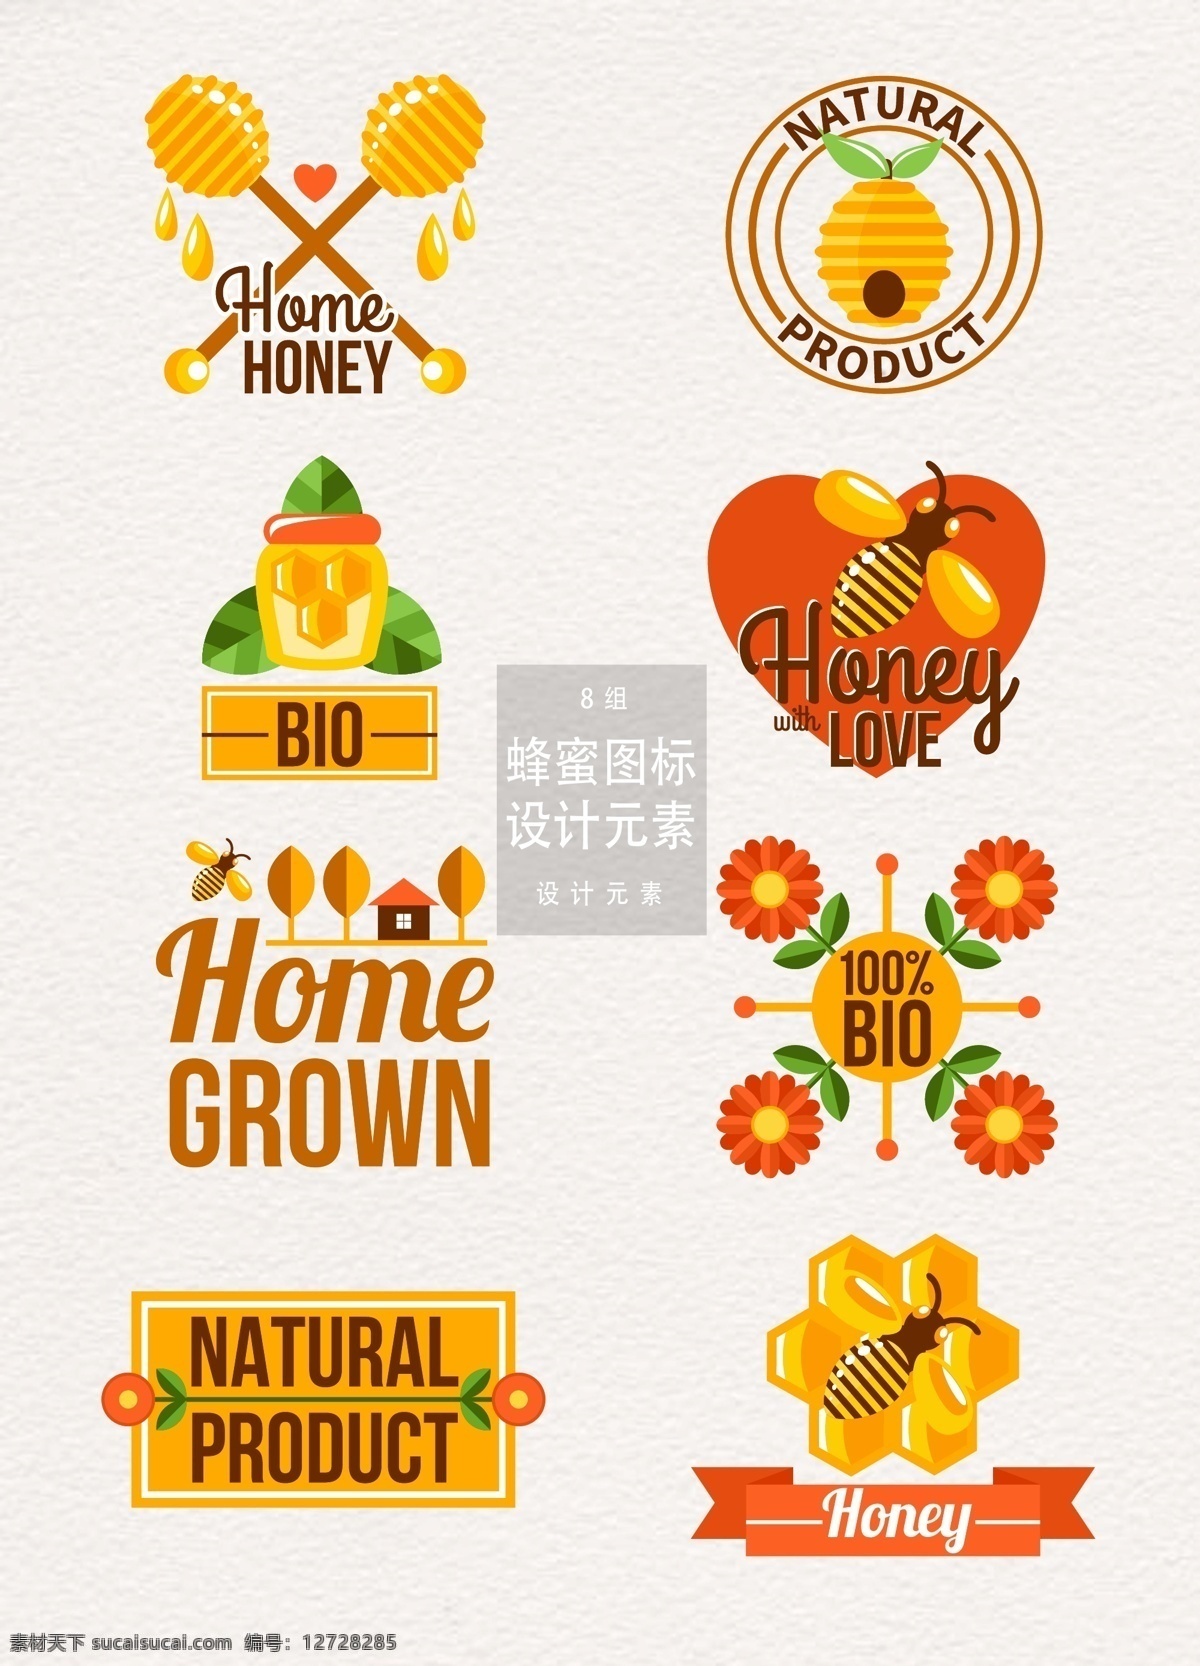 矢量 蜂蜜 蜜糖 图标 元素 花朵 食物 丝带 设计元素 图标设计 蜜糖图标 蜜蜂 食品图标